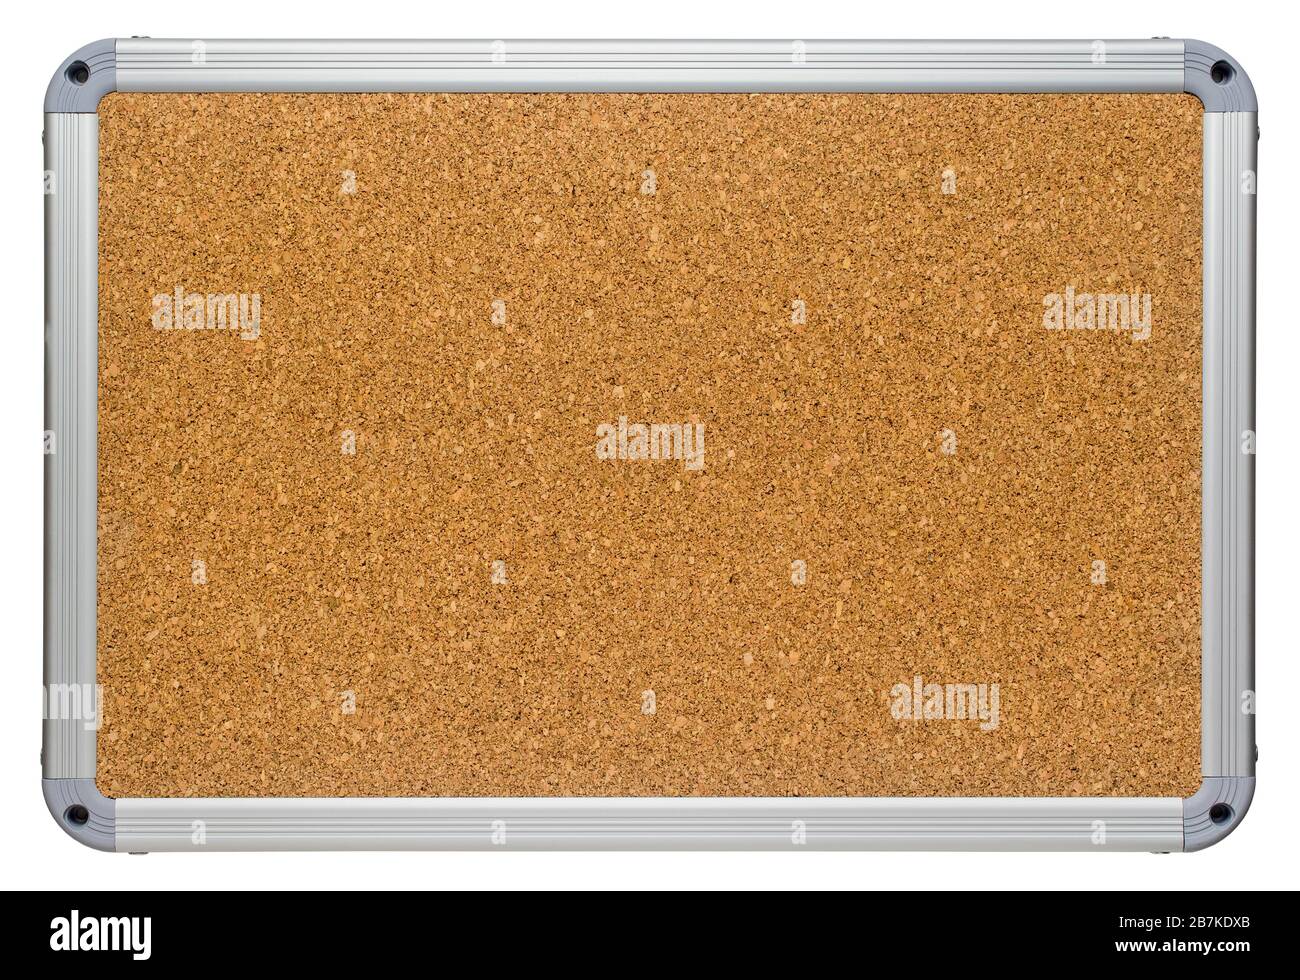 Nettoyez le corkboard à l'aide d'un cadre moderne en plastique couleur métallique. Texture de surface de panneau en liège vierge et nette. Isolé sur fond blanc. Banque D'Images